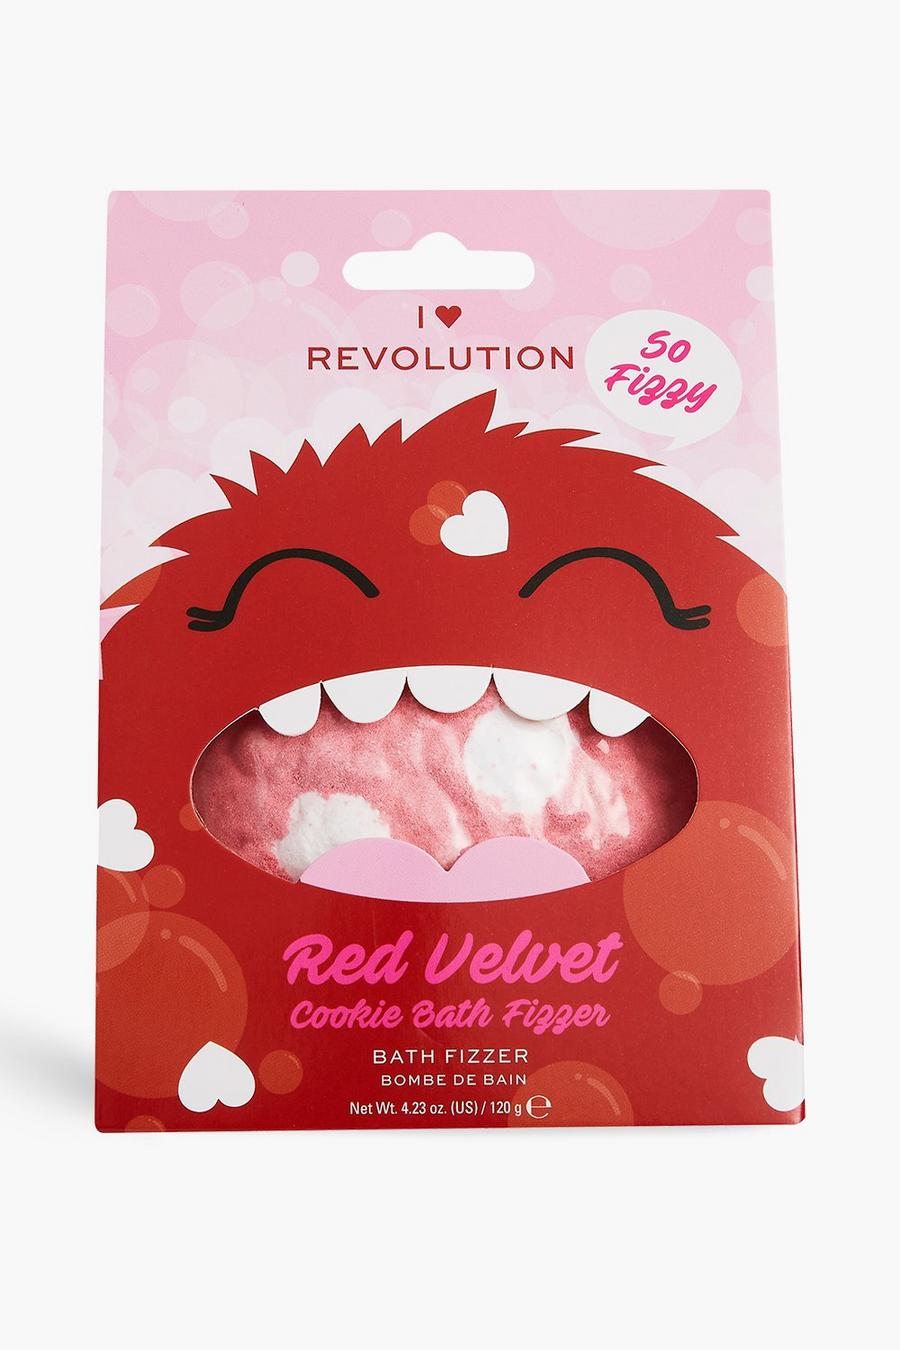 I Heart Revolution - Bombe de bain Red Velvet Cookie